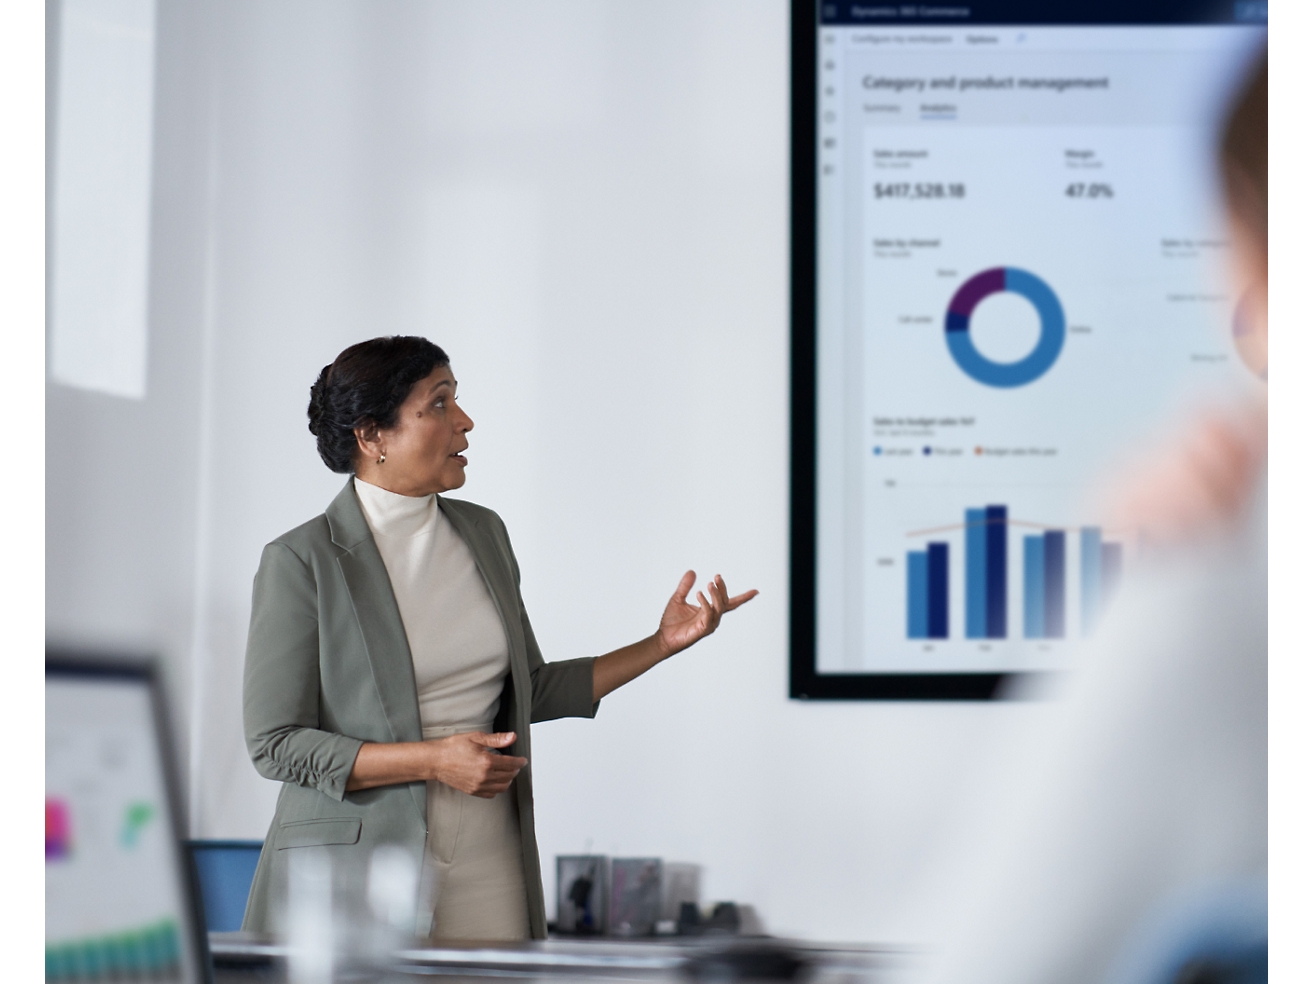 Een professional die financiële gegevens op een scherm presenteert aan haar publiek in een moderne kantooromgeving.